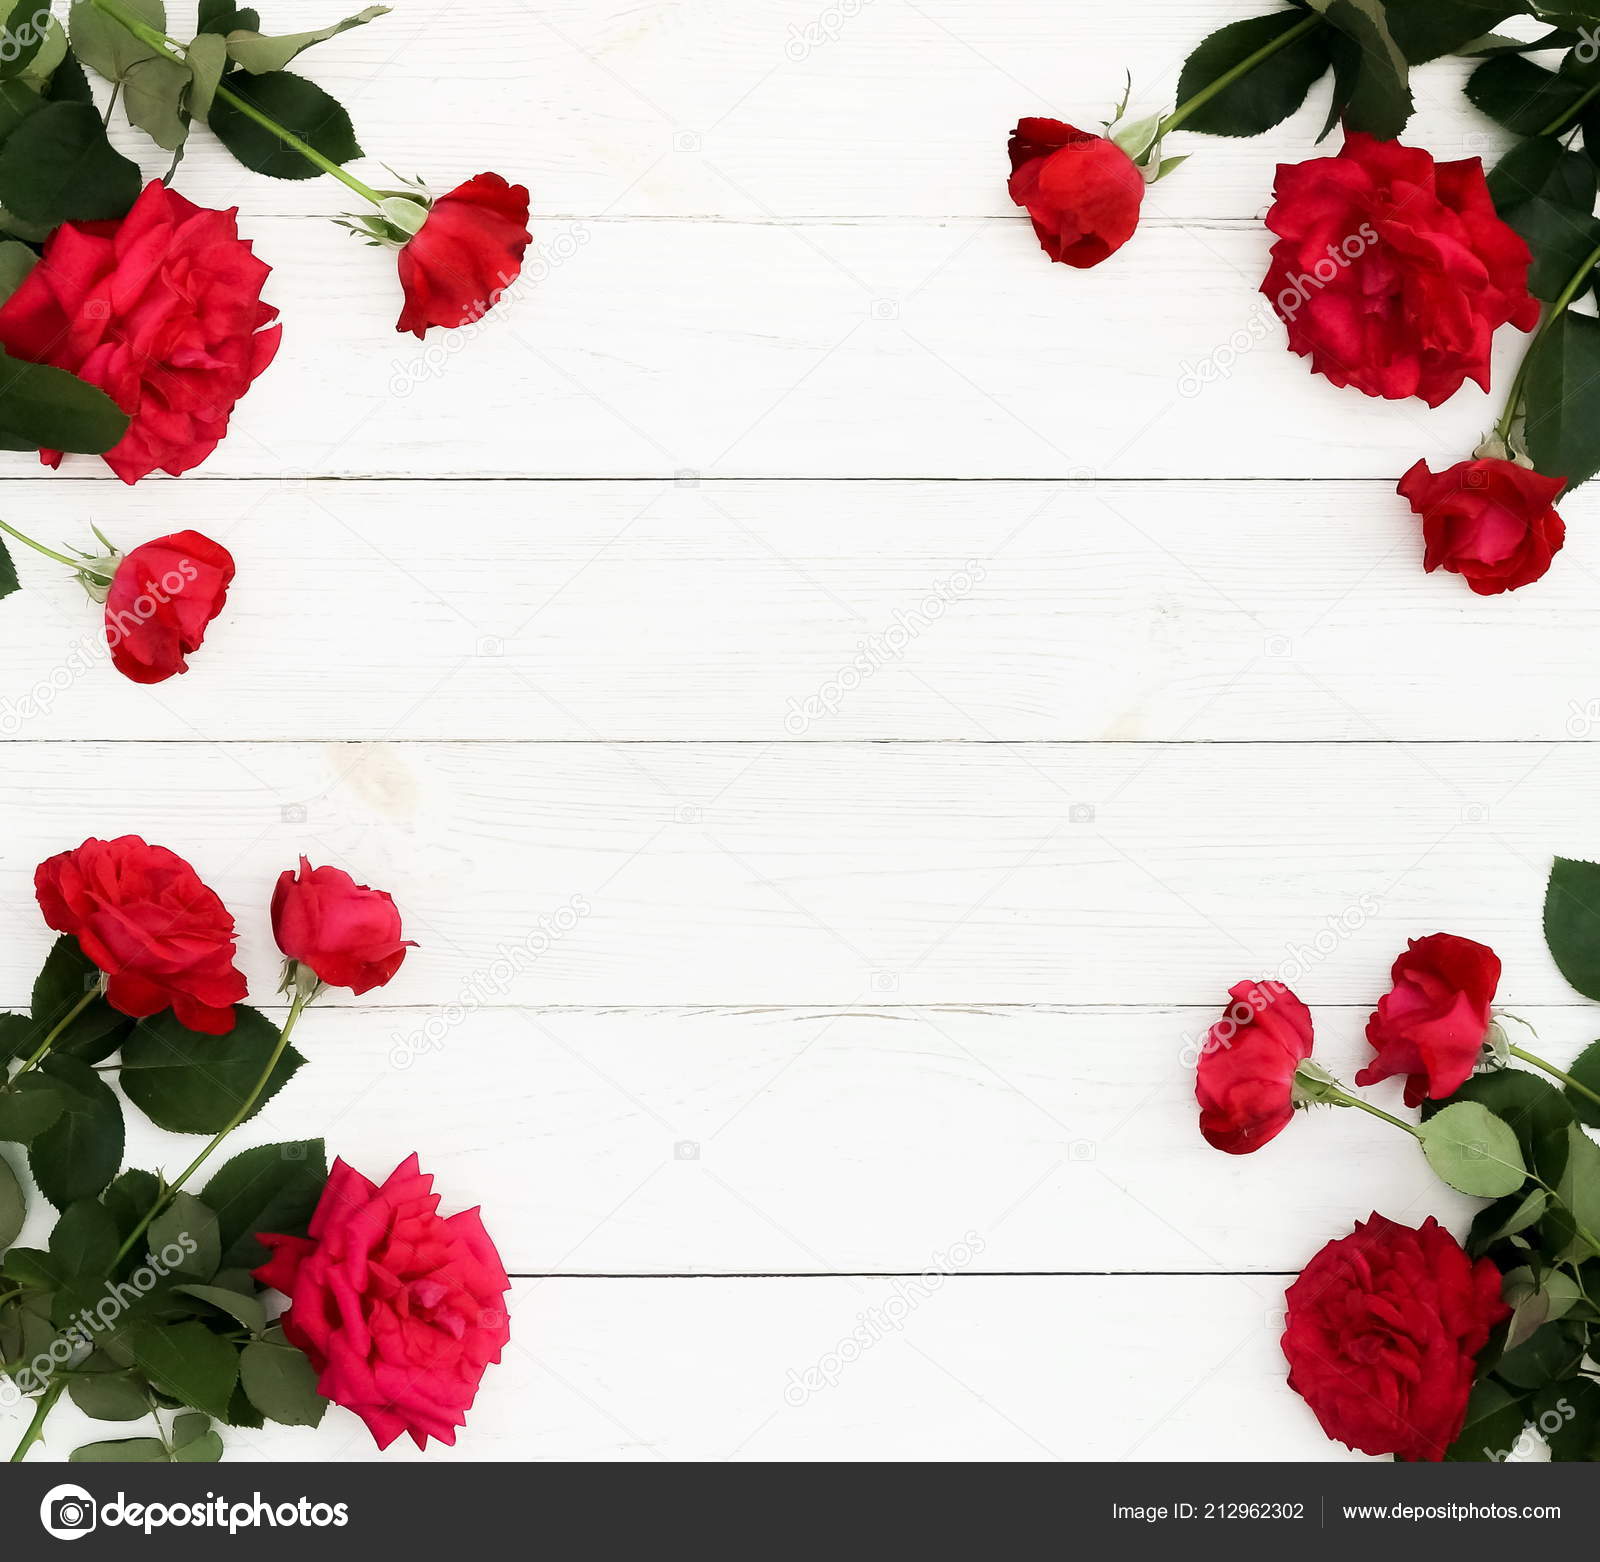 Ngày Valentine, Ngày Tình yêu đầy ý nghĩa bao la đã đến. Hãy để hoa đỏ đong đầy tình yêu, sắc đỏ ngập tràn sức sống giúp bạn truyền tới những người mình yêu thương. Hãy cùng đến và ngắm nhìn một bức hình đầy cảm xúc này.